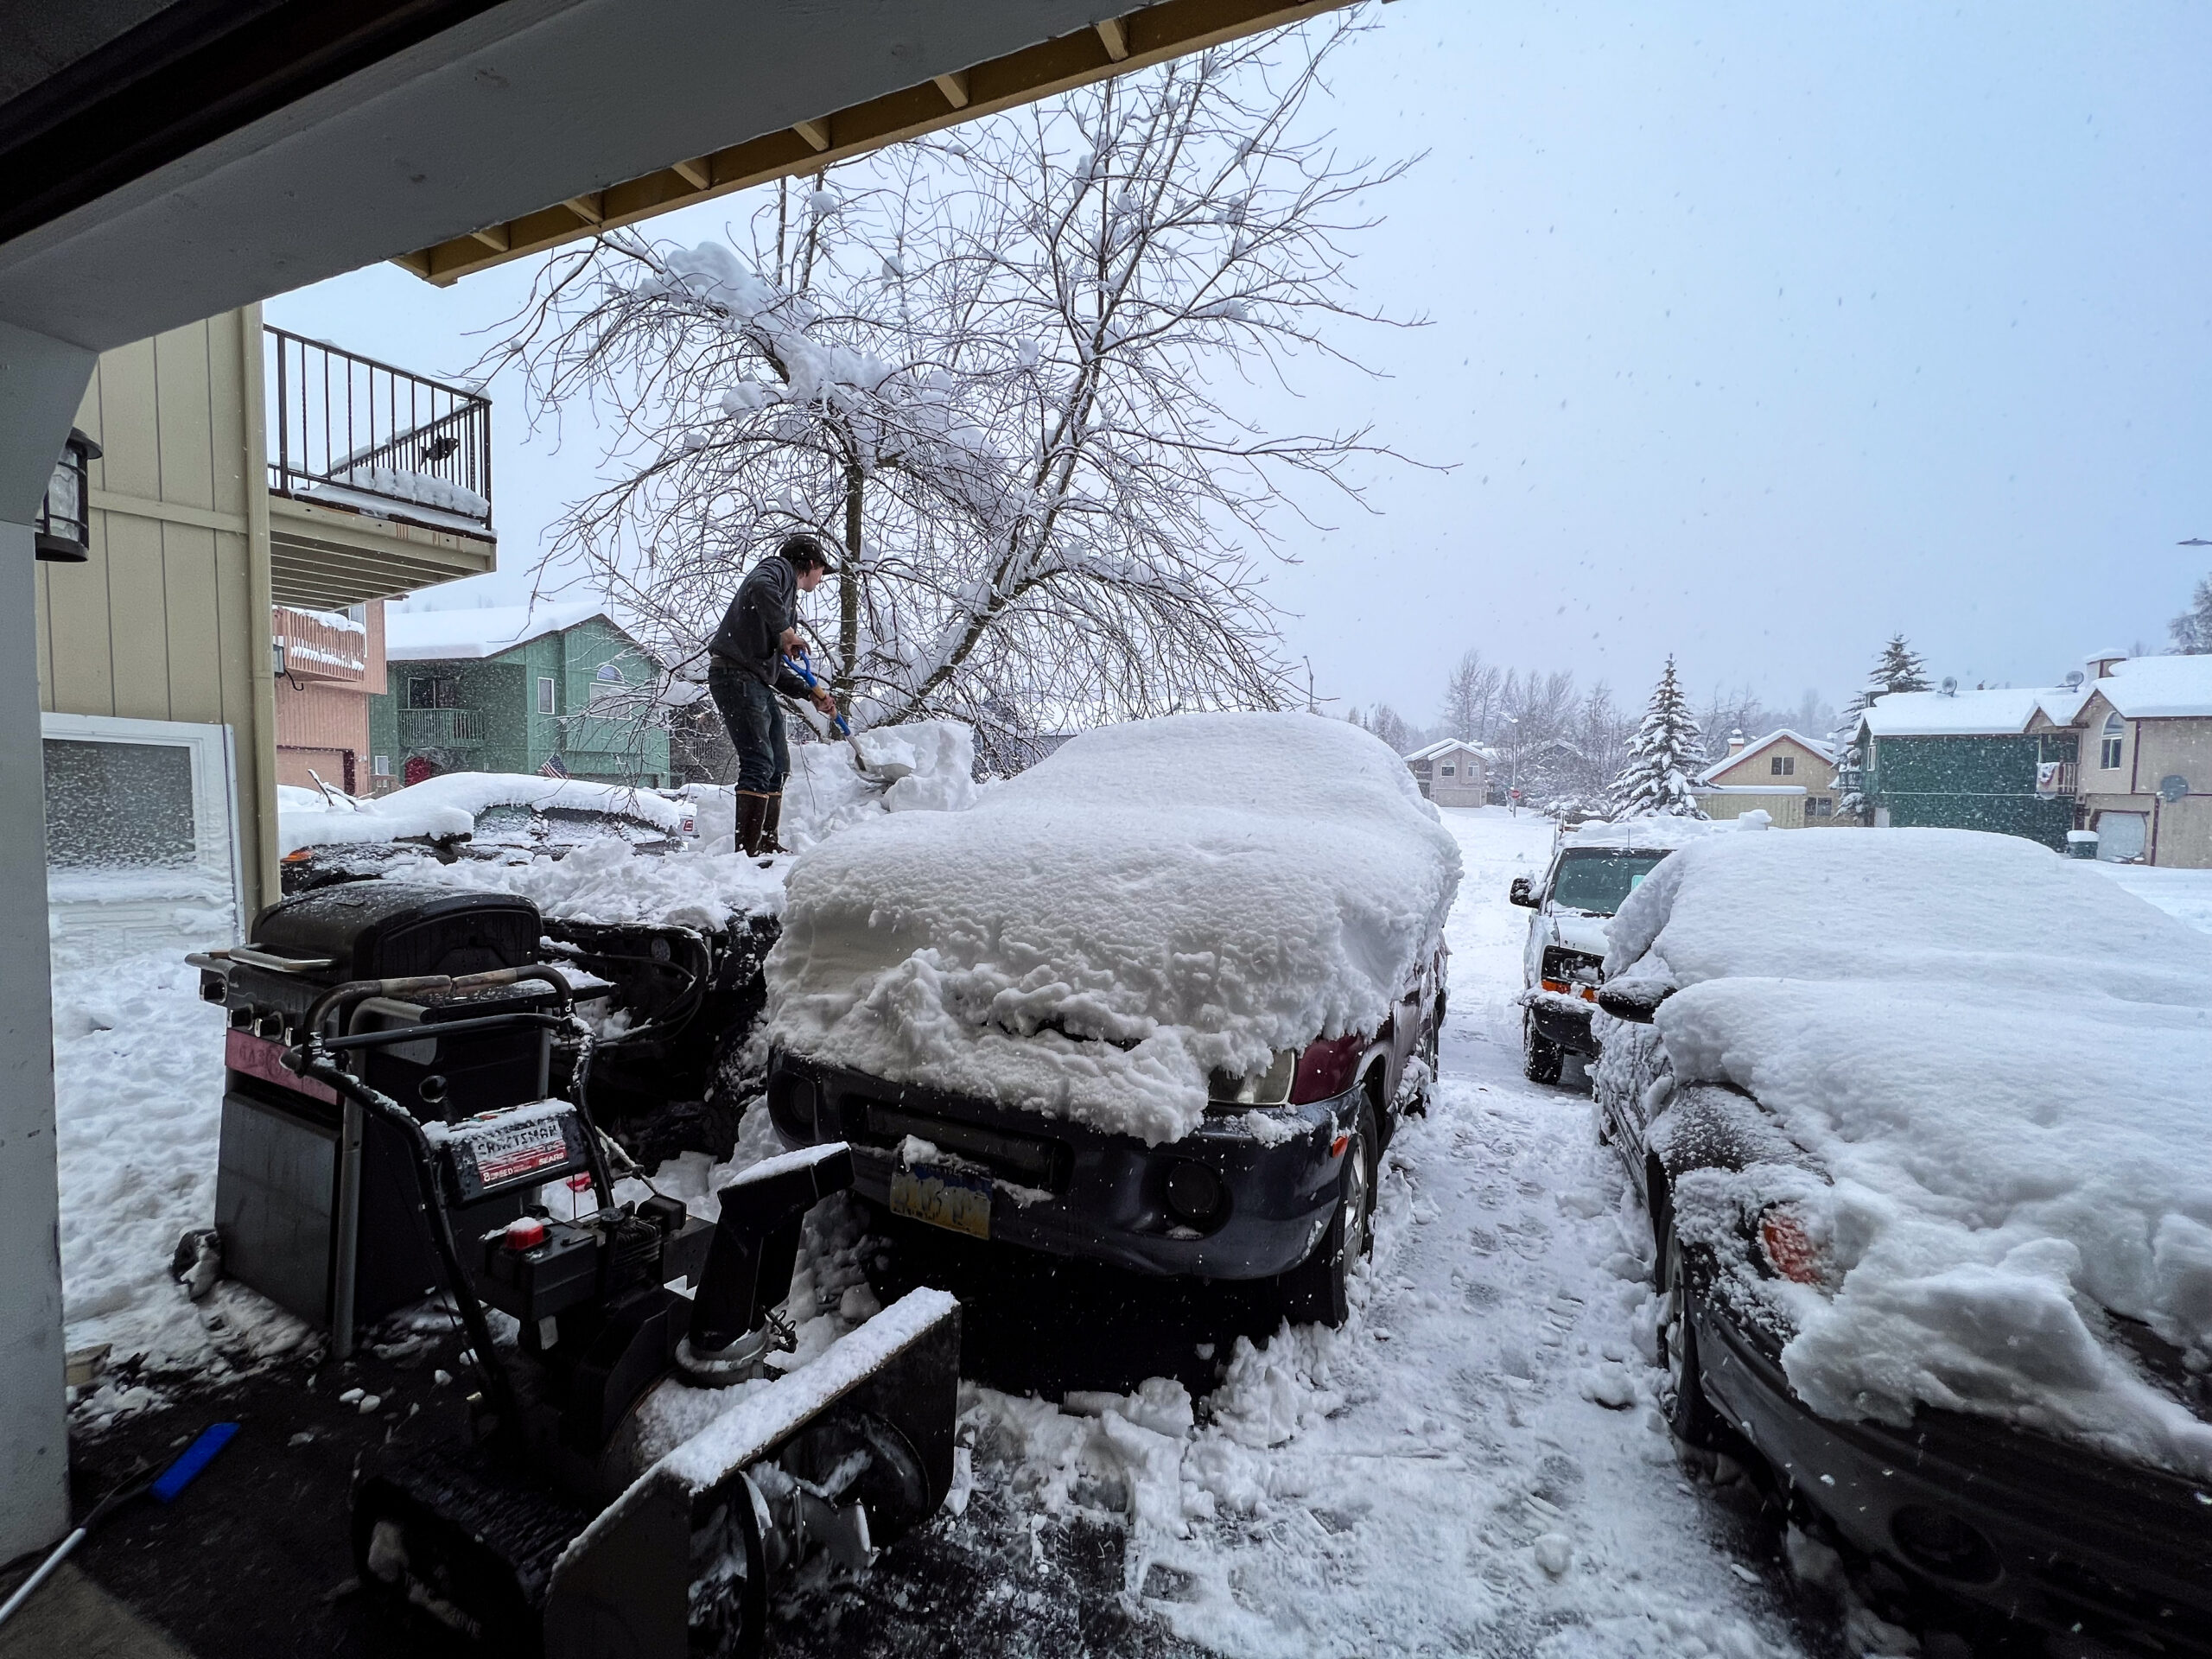 A man shovels snow off his car.